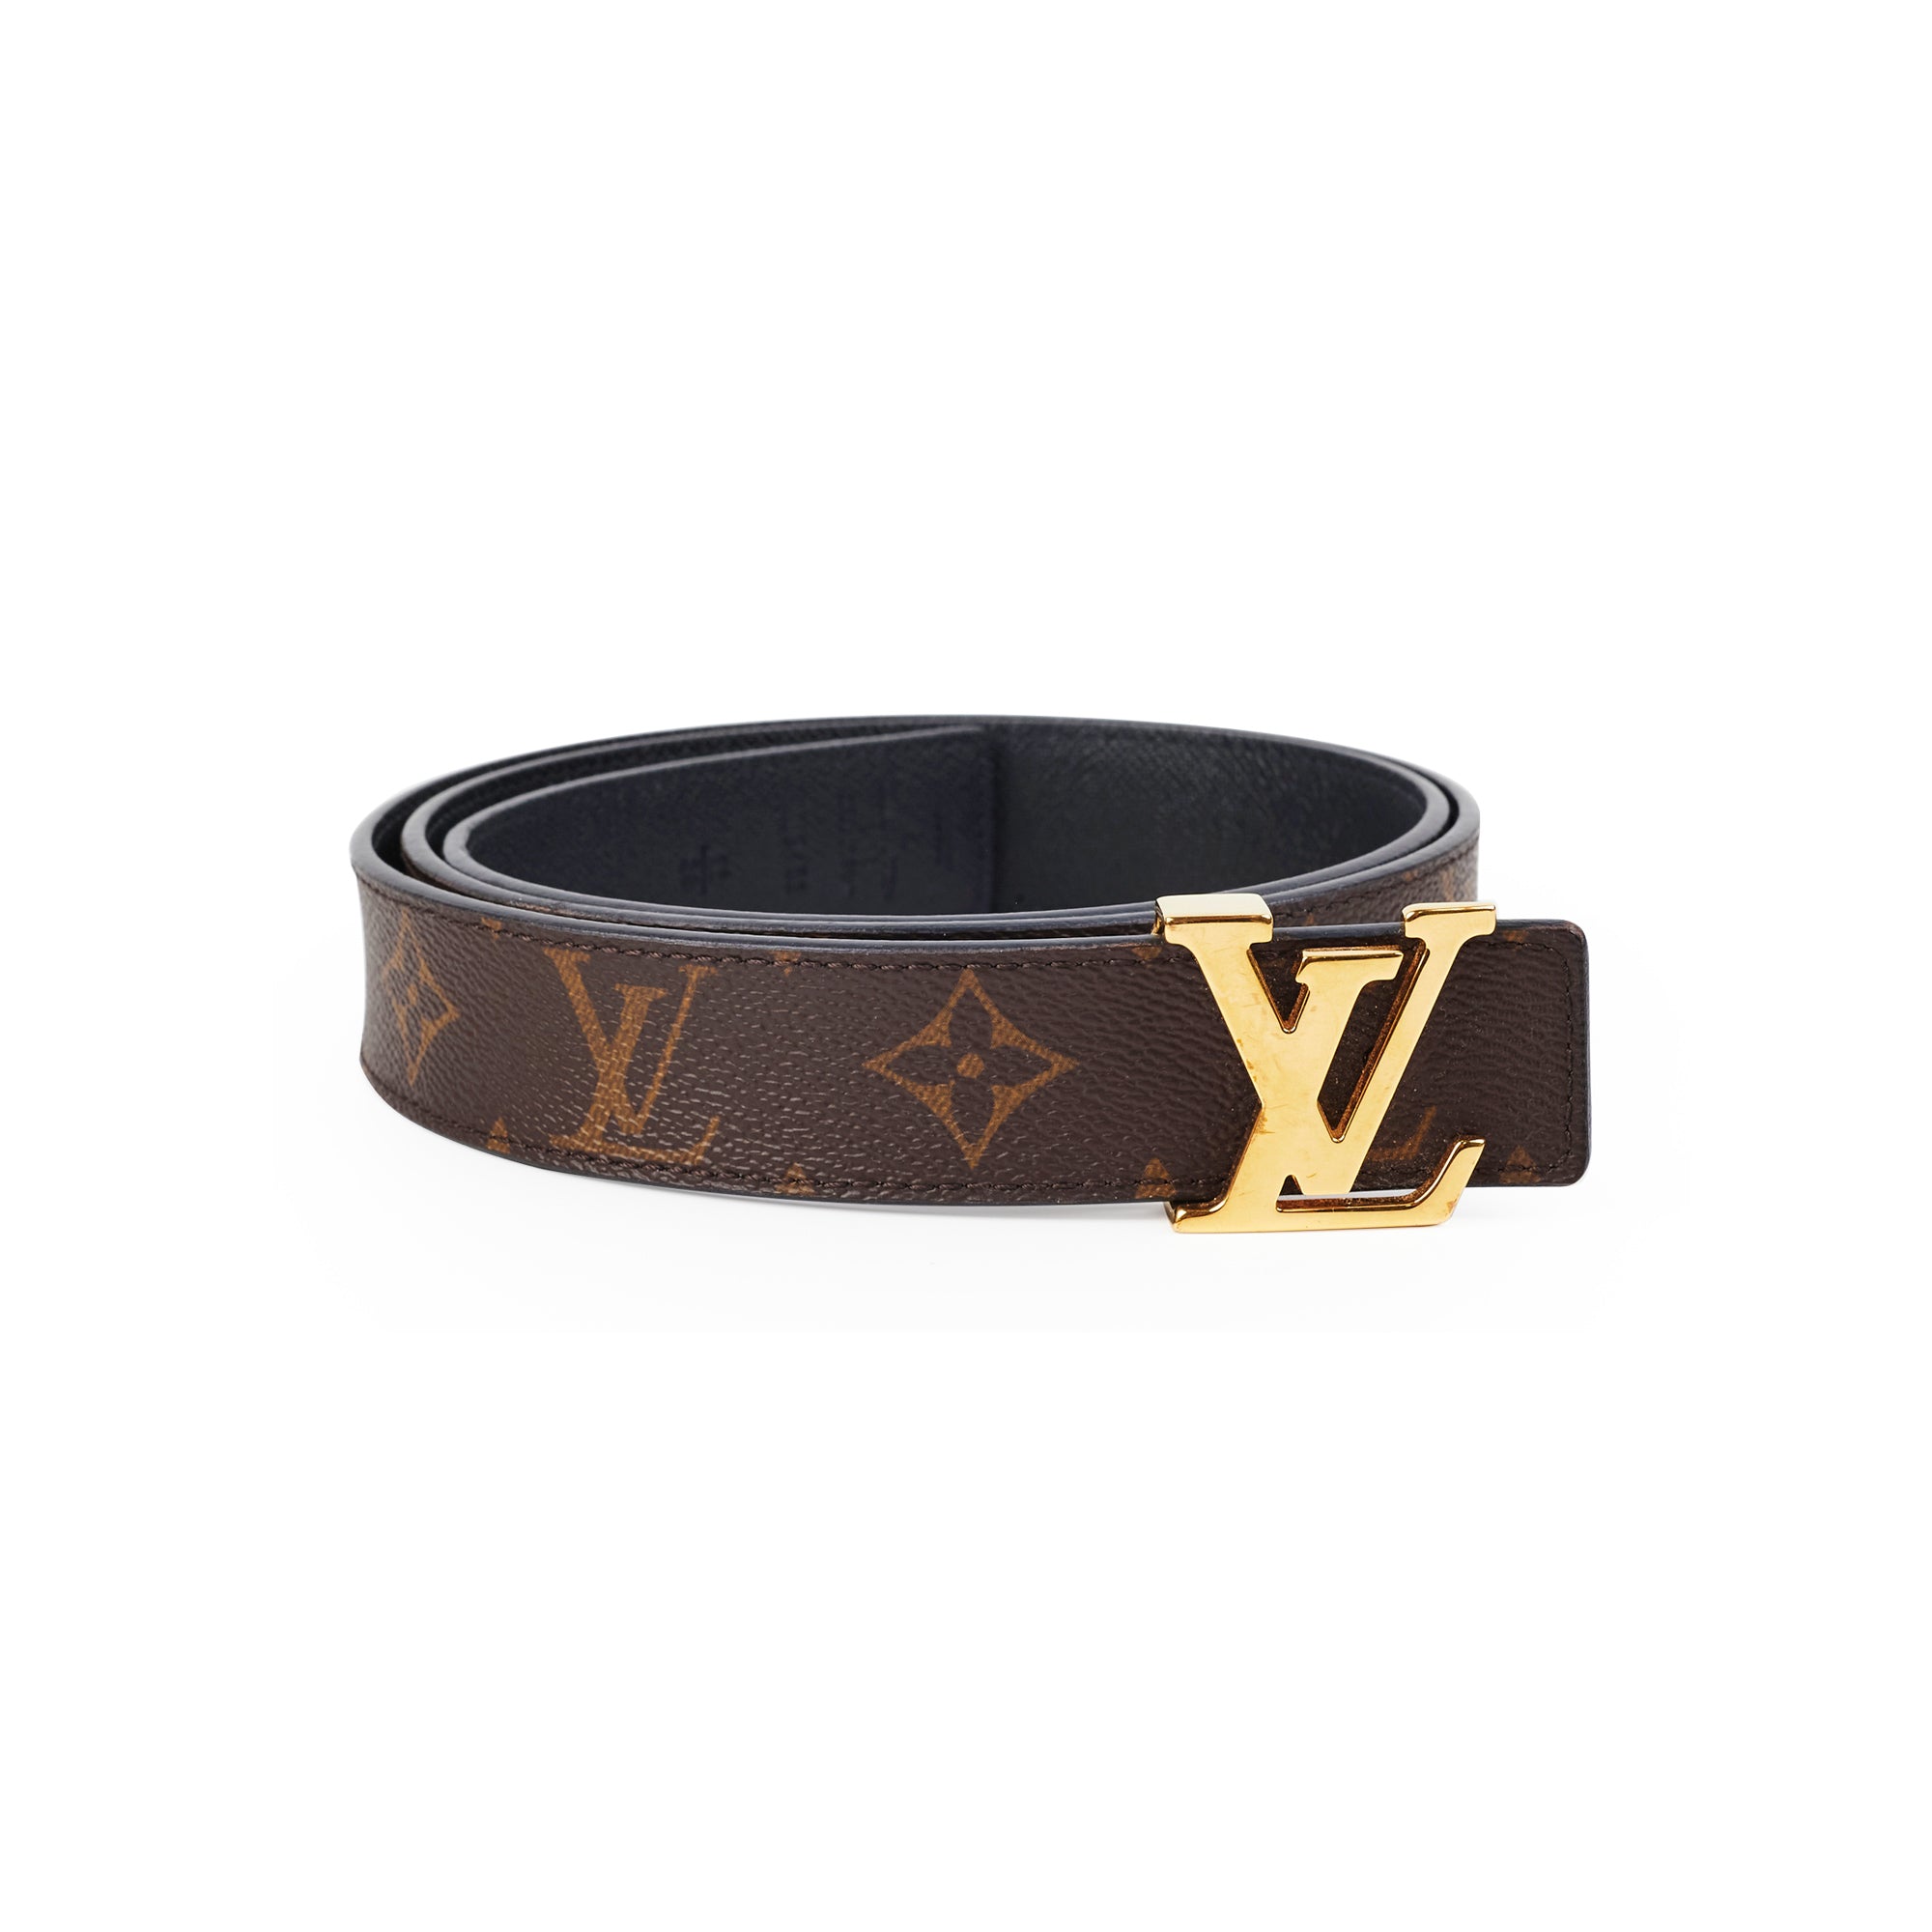 Authentic Louis Vuitton belt Brown Monogram Leather size 95/38